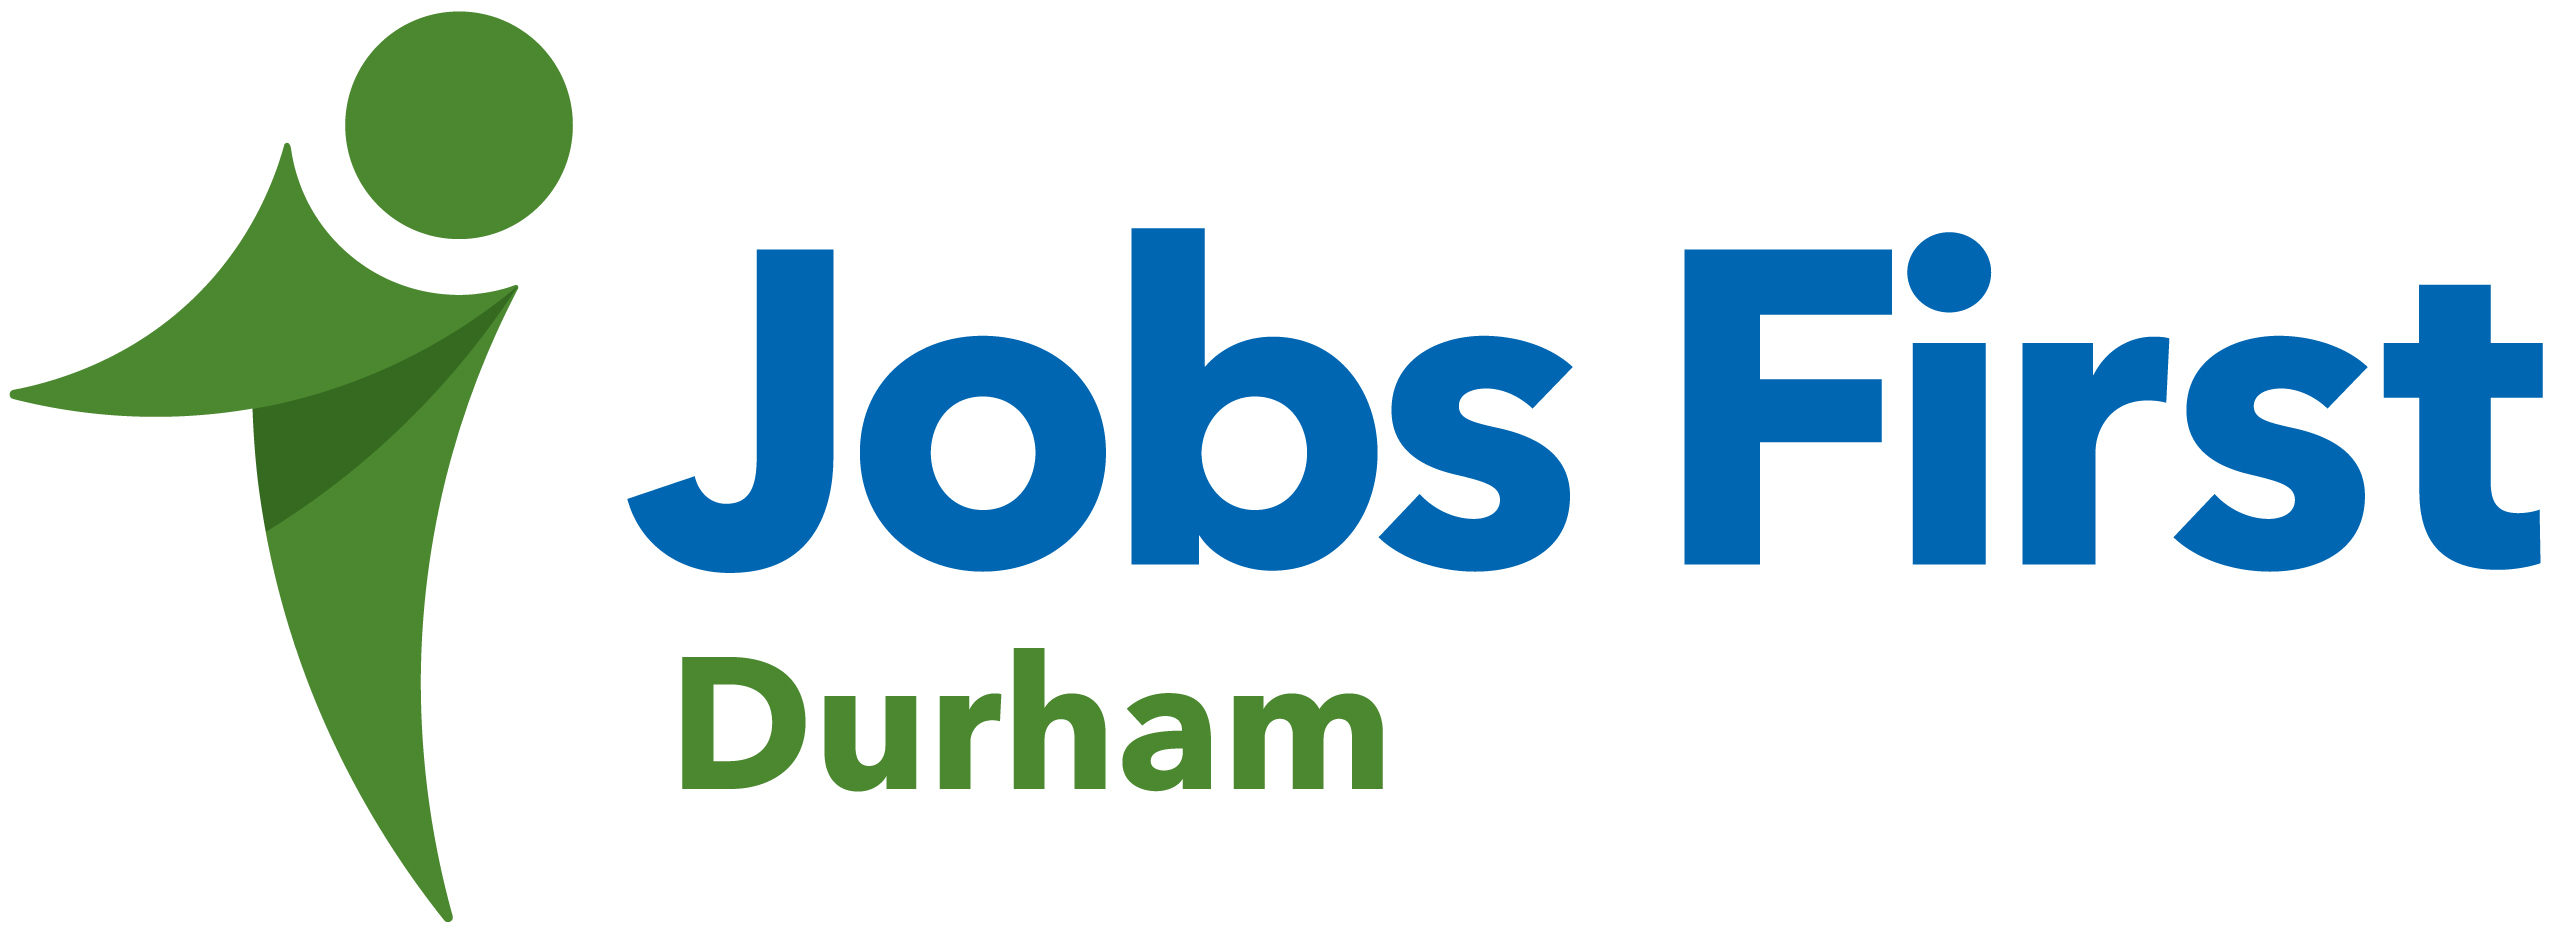 Jobs First Durham